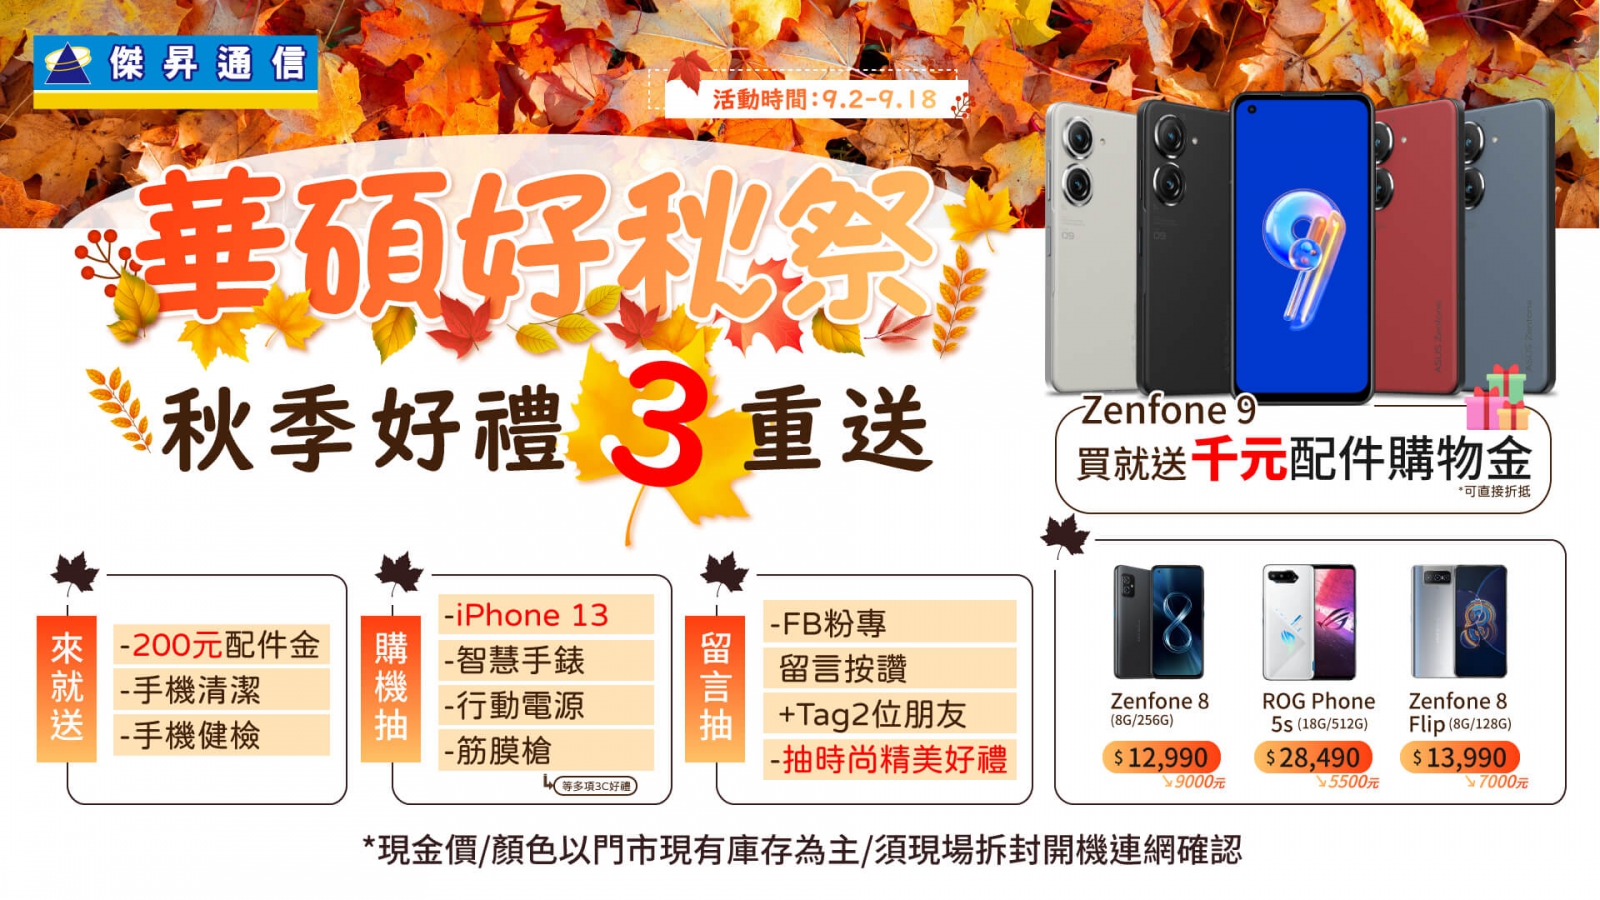 「華碩好秋祭」好禮三重送！Zenfone 8激殺12,990 加碼再抽iPhone 13